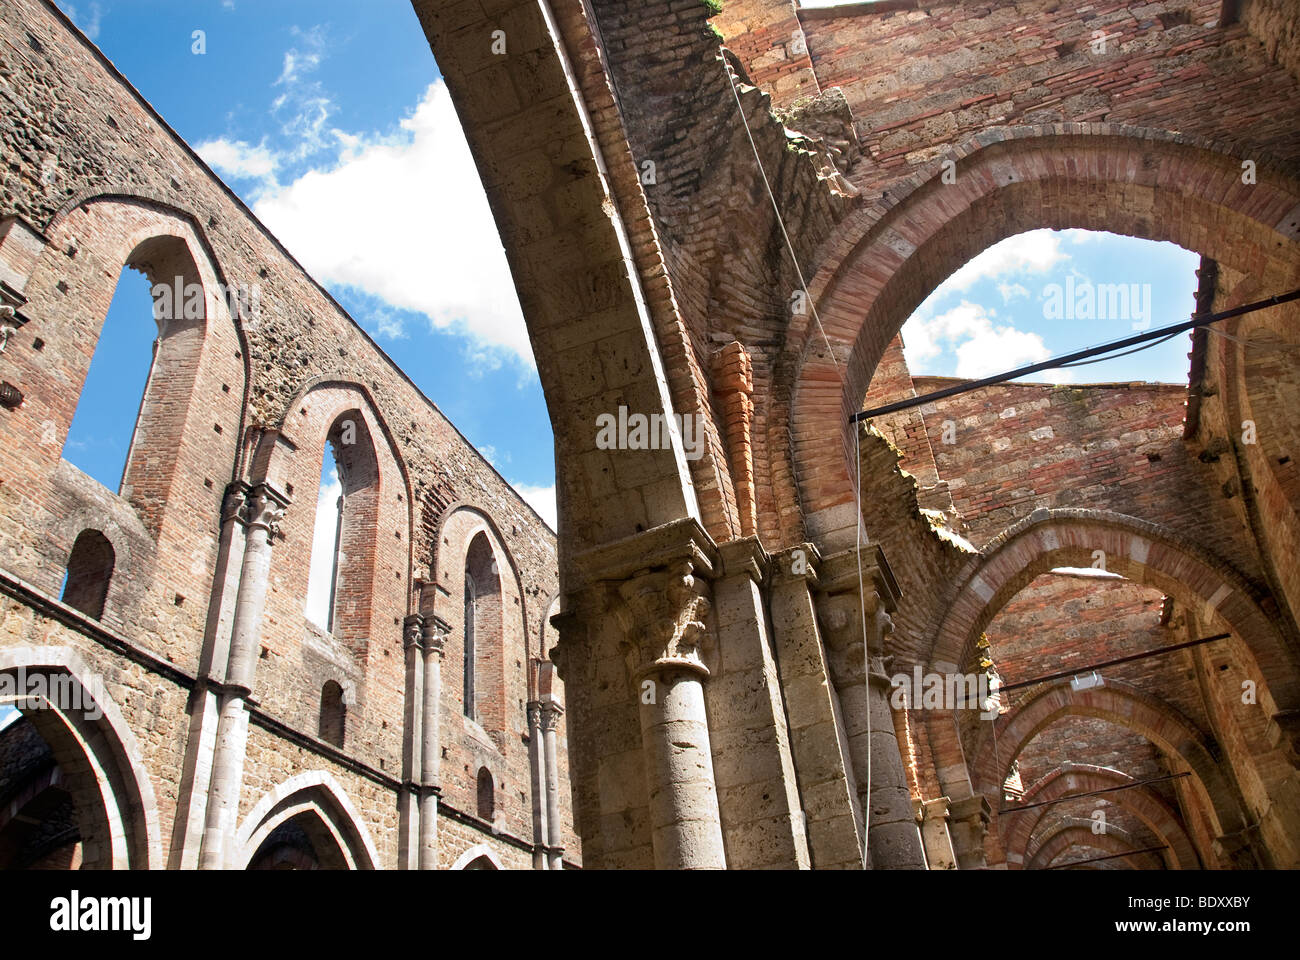 San Galgano im 12. Jahrhundert Abtei gegründet von Französisch Zisterzienser-Mönche in der Nähe von Siena, jetzt mit dem Dach eingestürzt. Stockfoto